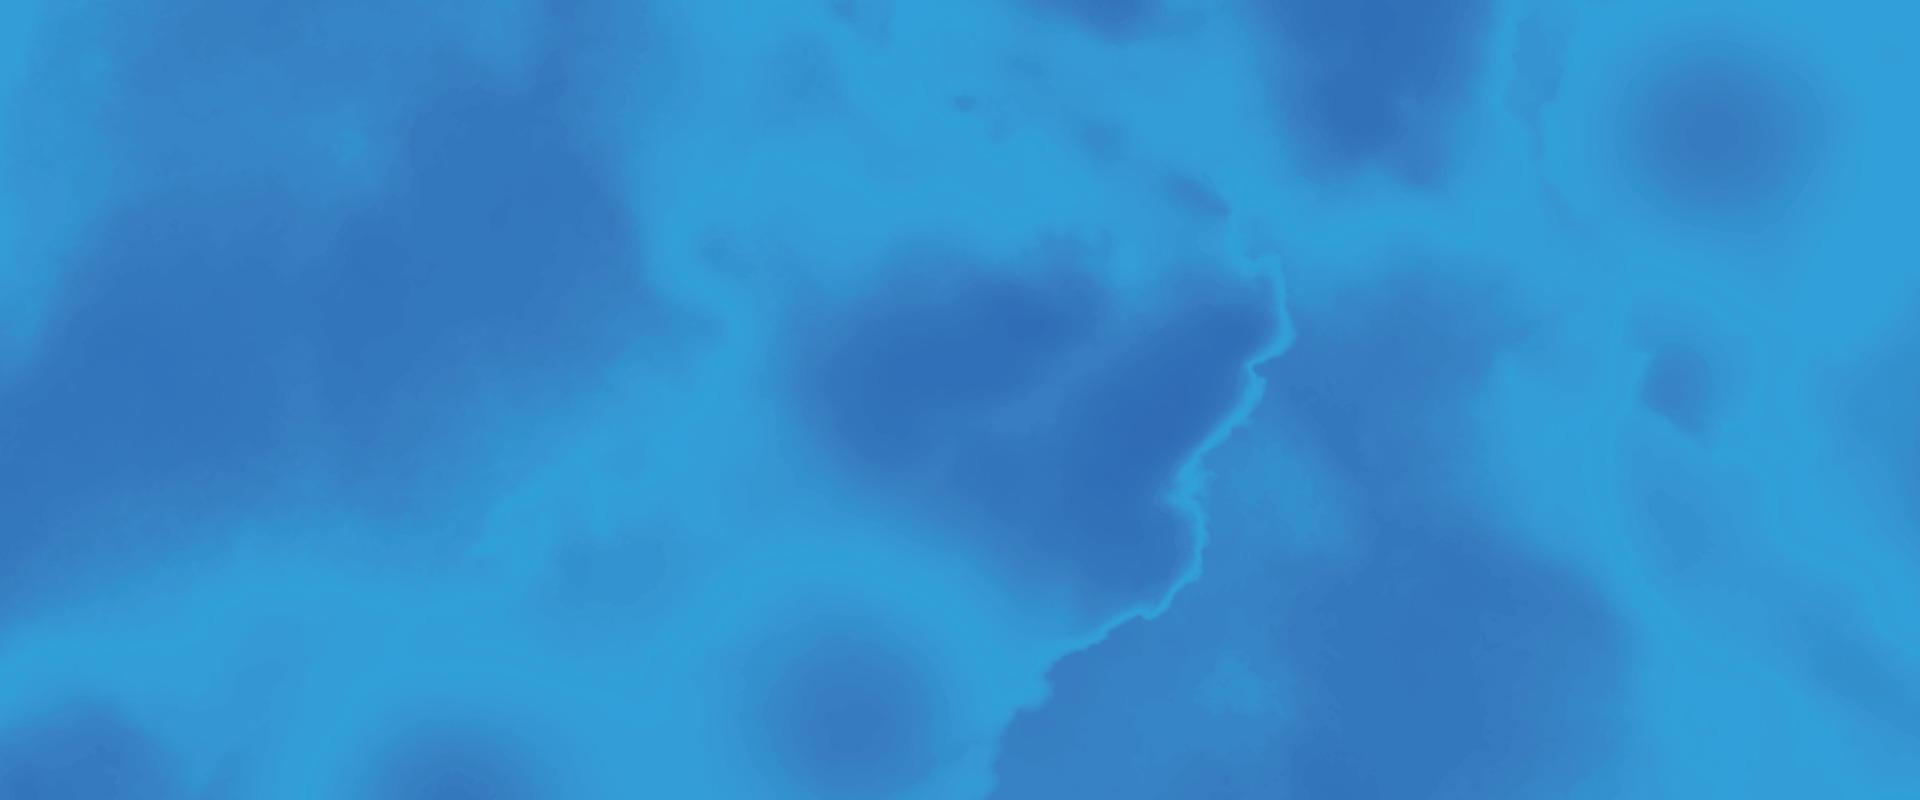 blu acquerello e carta struttura. bellissimo buio pendenza mano disegnato di spazzola grunge sfondo. acquerello lavare acqua dipinto struttura vicino su, grungy design. blu nebulosa scintillare stella universo. vettore